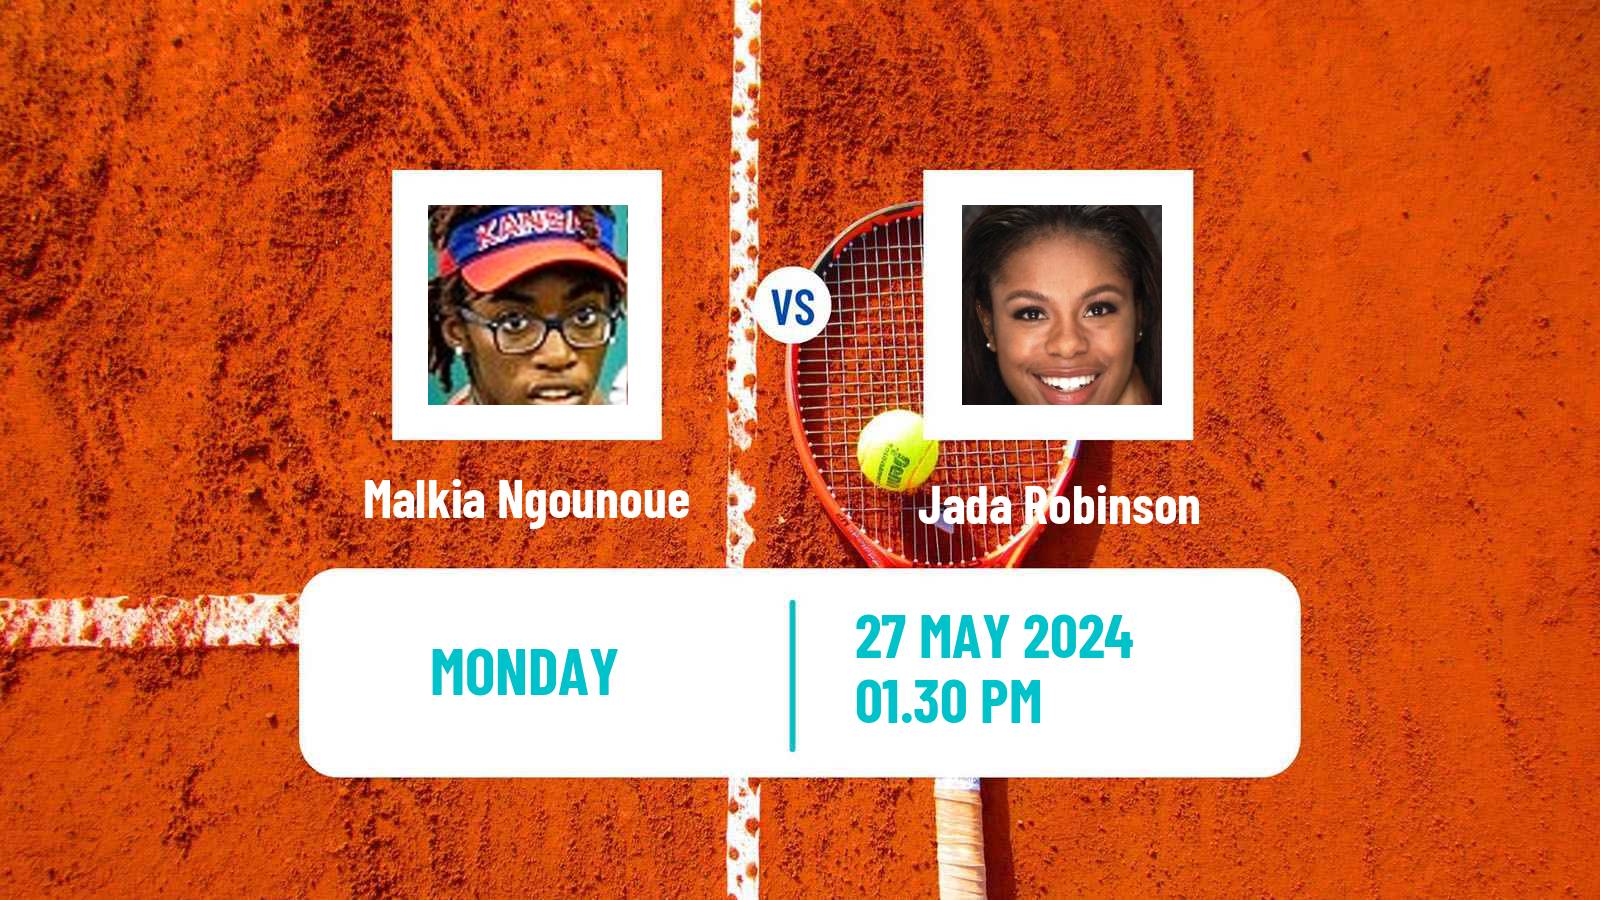 Tennis ITF W35 Santo Domingo 4 Women Malkia Ngounoue - Jada Robinson